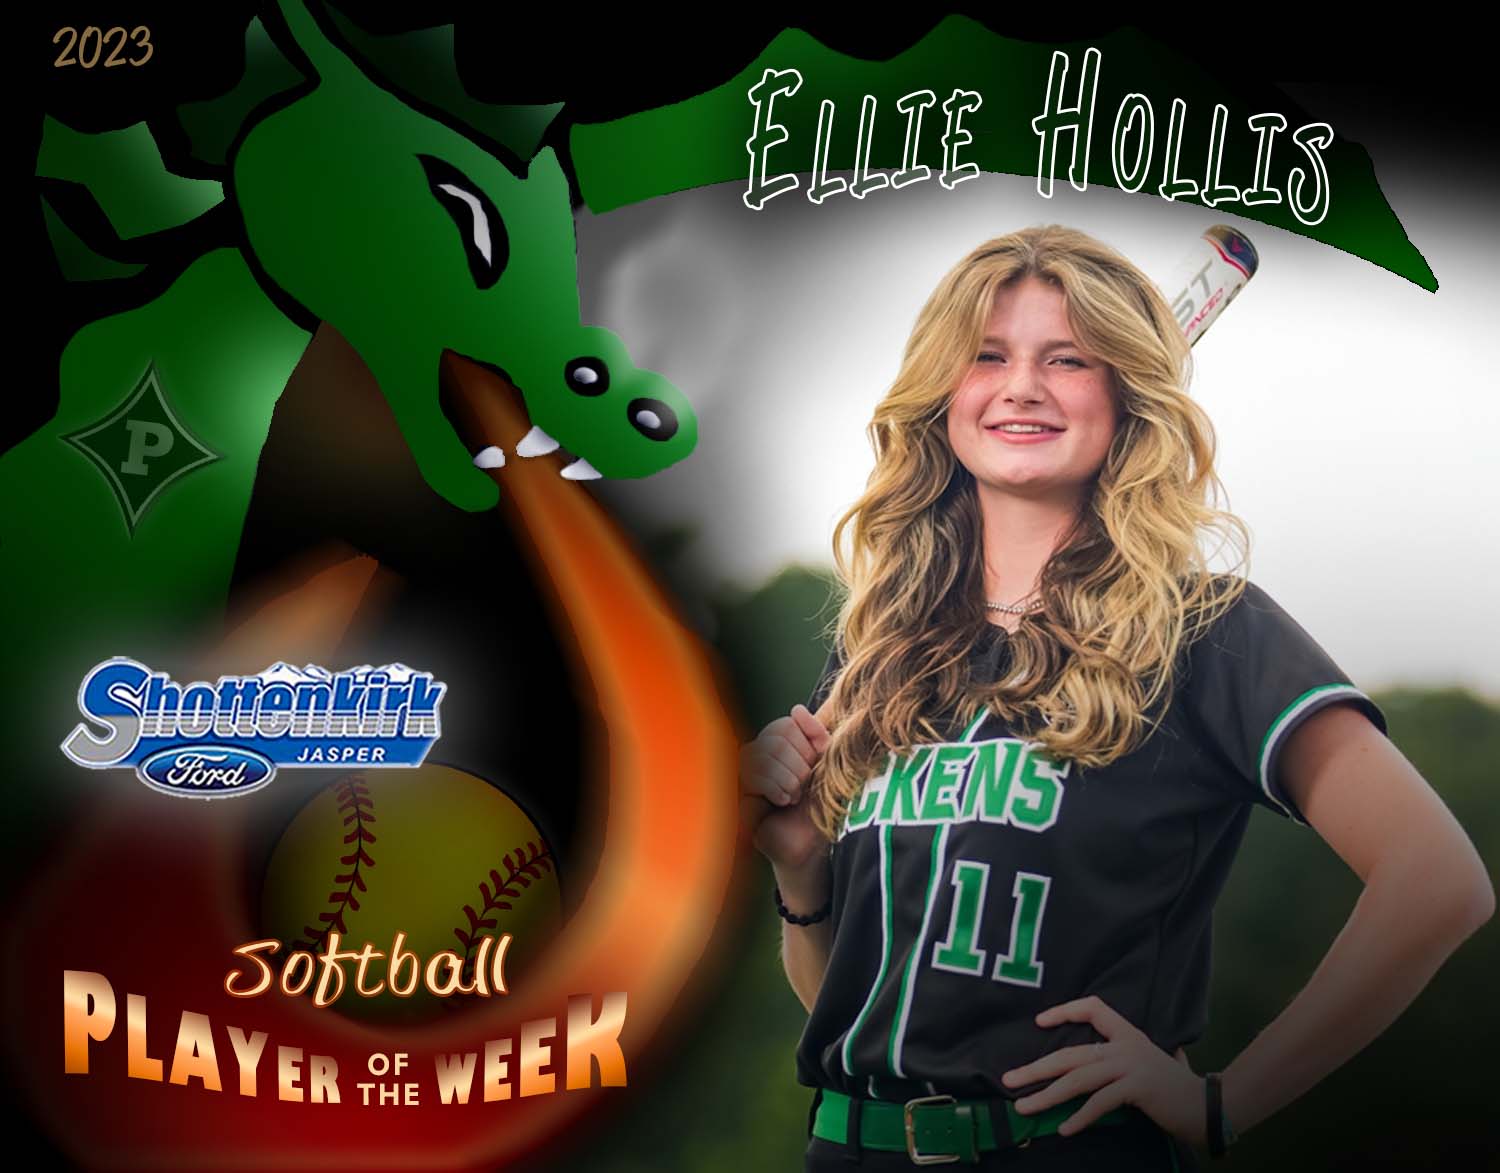 PHS Softball Player of the Week #6 - Ellie Hollis